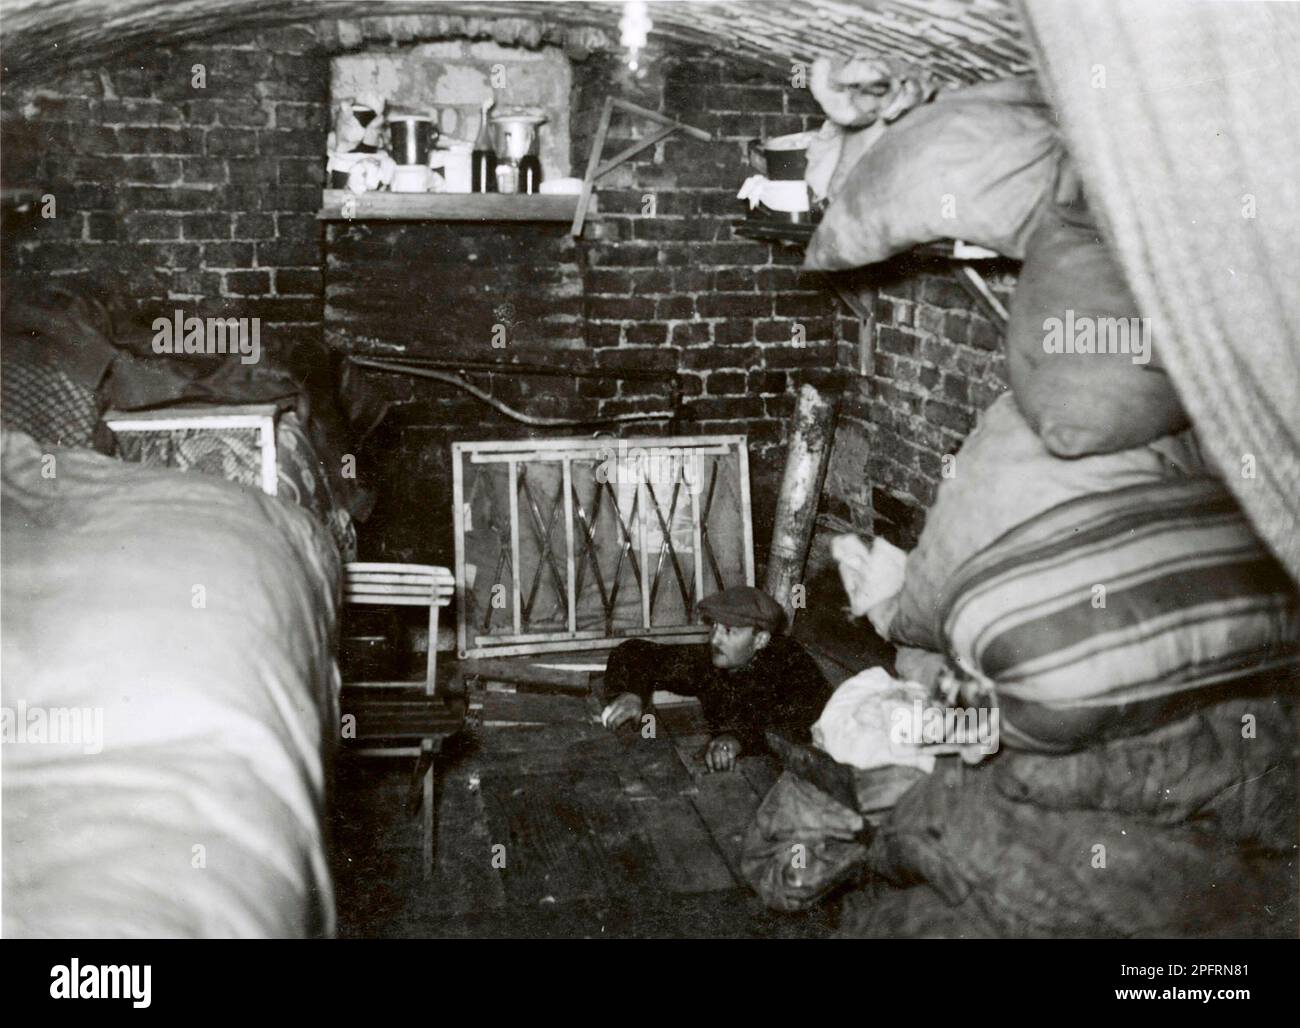 En janvier 1943, les nazis sont arrivés pour arrondir les Juifs du ghetto de Varsovie les Juifs, résolus au combattre, ont pris la SS avec des armes maison et primitives. Les défenseurs ont été exécutés ou déportés et la zone du ghetto a été systématiquement démolie. Cet événement est connu sous le nom de soulèvement du ghetto. Cette image montre un bunker souterrain où les combattants de la réistance sont restés. Cette image est tirée du dossier photographique allemand de l'événement, connu sous le nom de rapport Stroop. Banque D'Images